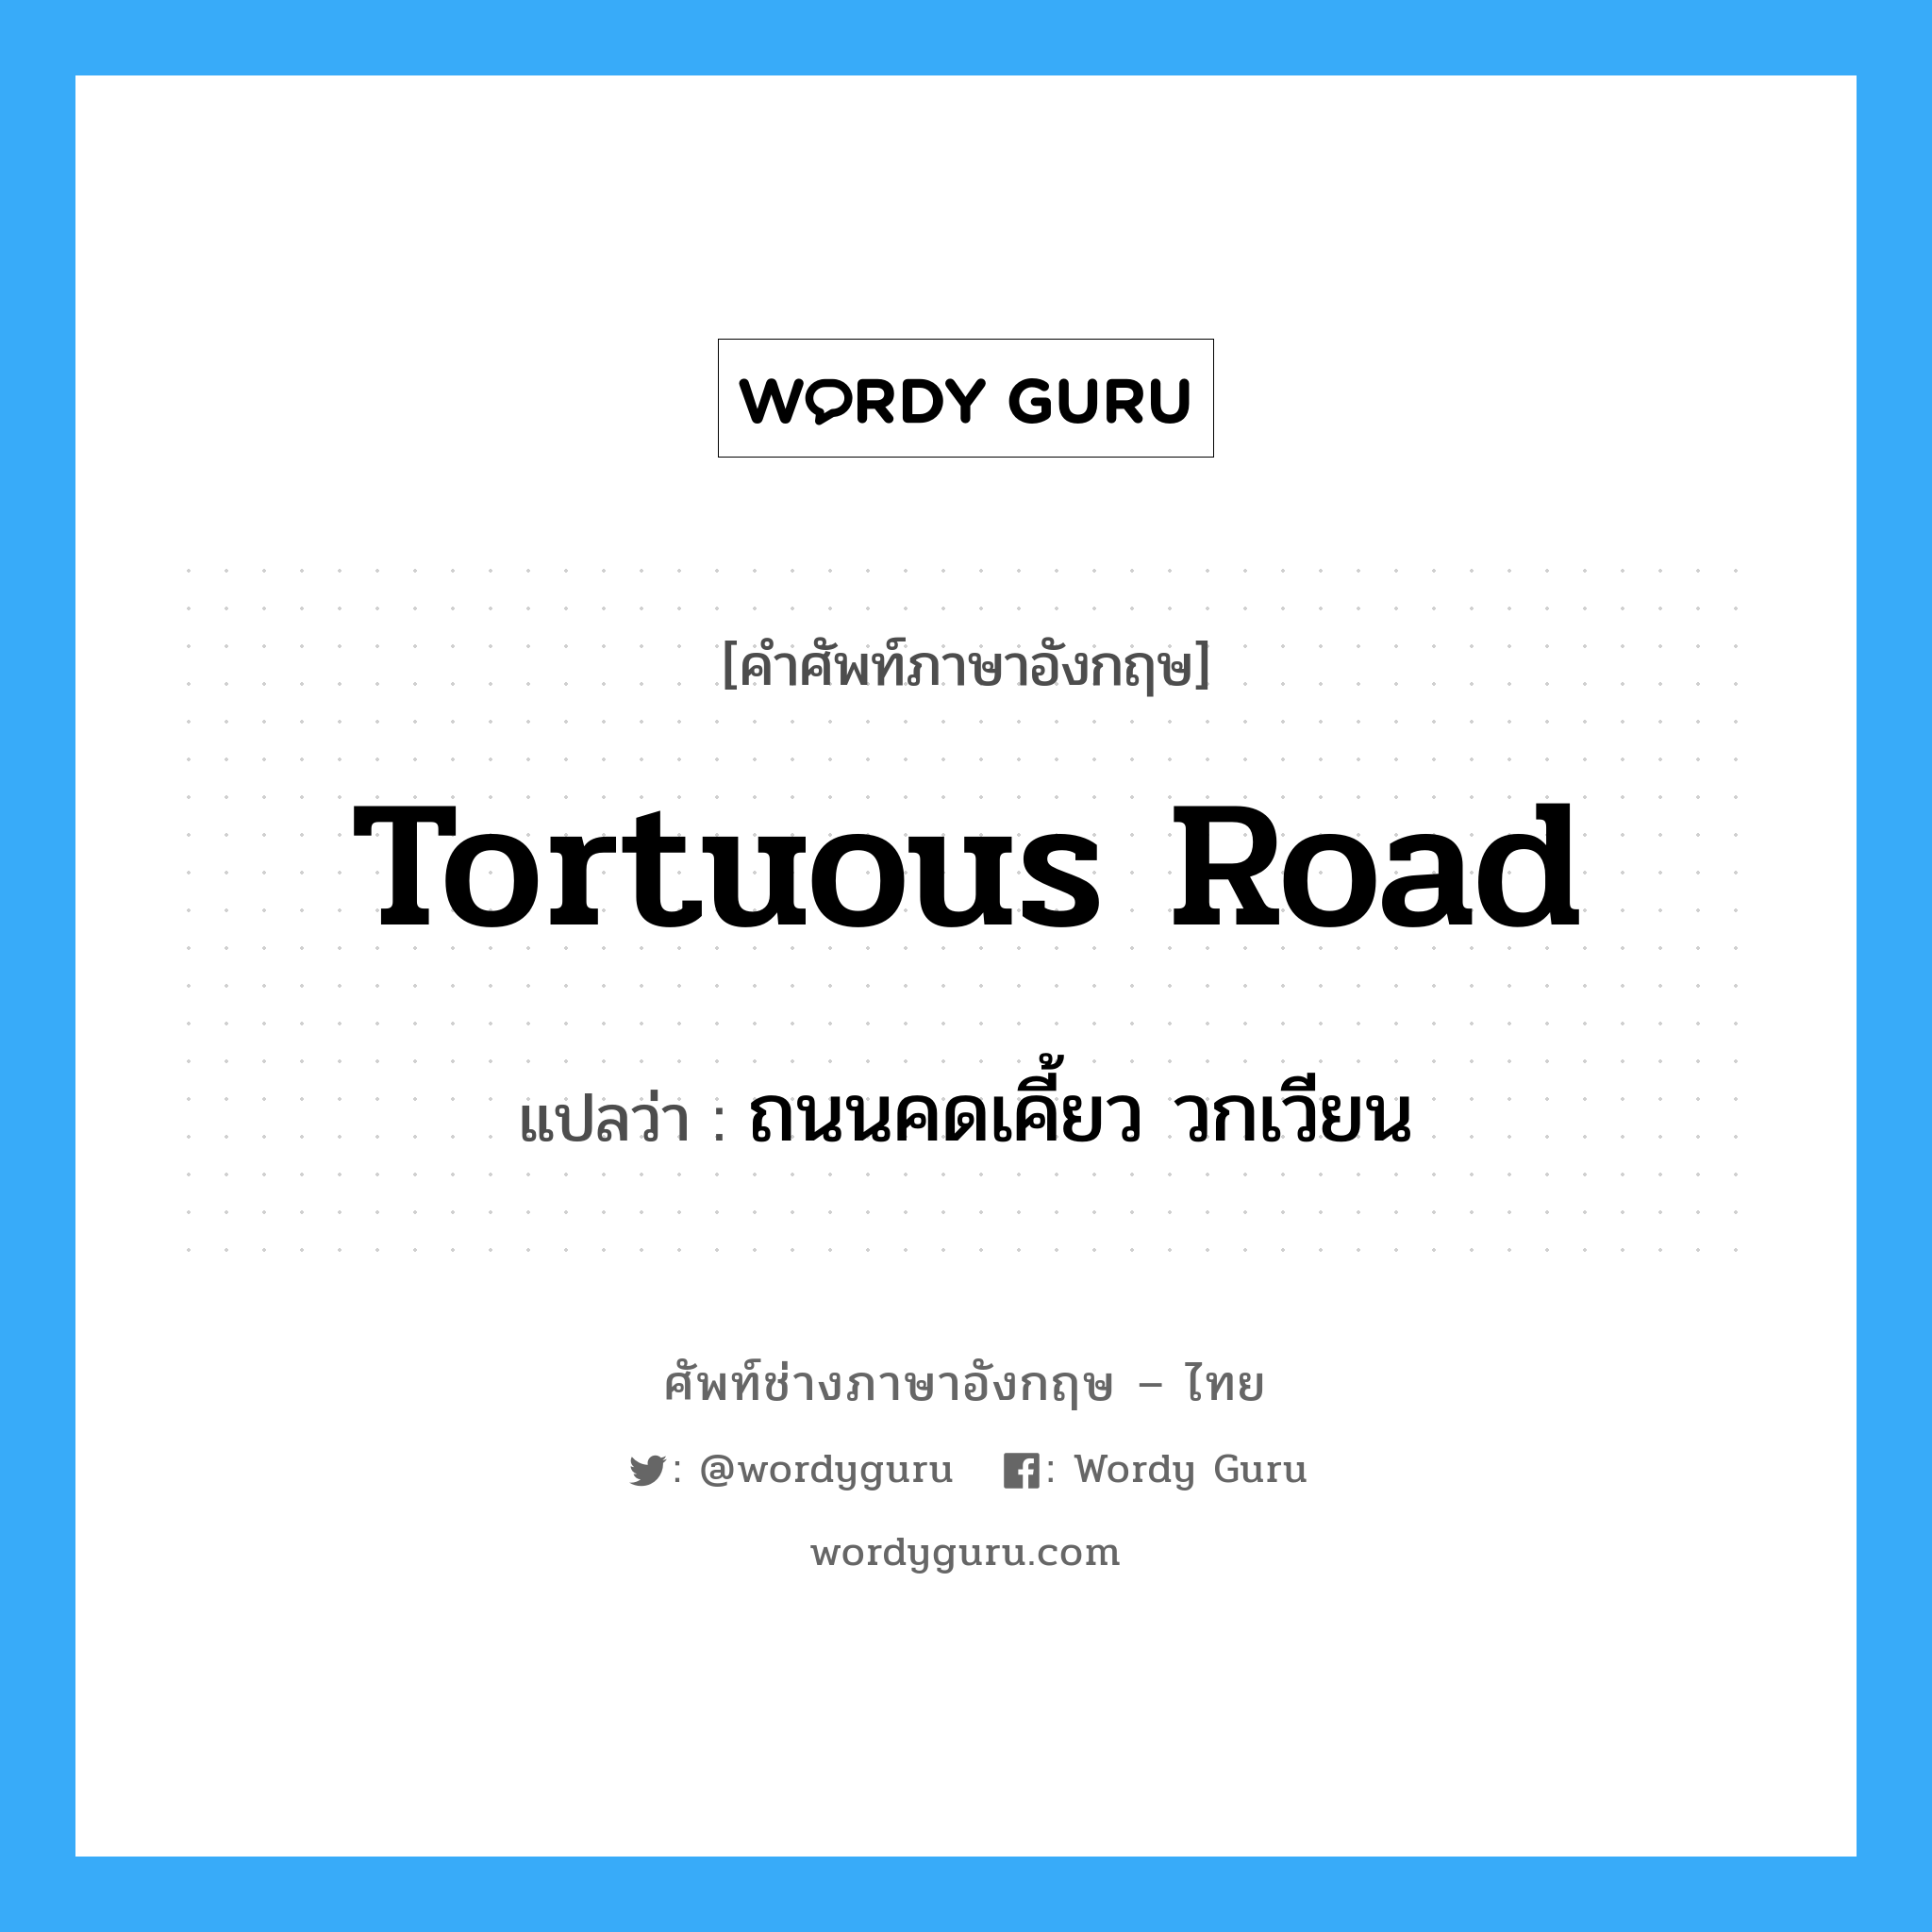 tortuous road แปลว่า?, คำศัพท์ช่างภาษาอังกฤษ - ไทย tortuous road คำศัพท์ภาษาอังกฤษ tortuous road แปลว่า ถนนคดเคี้ยว วกเวียน